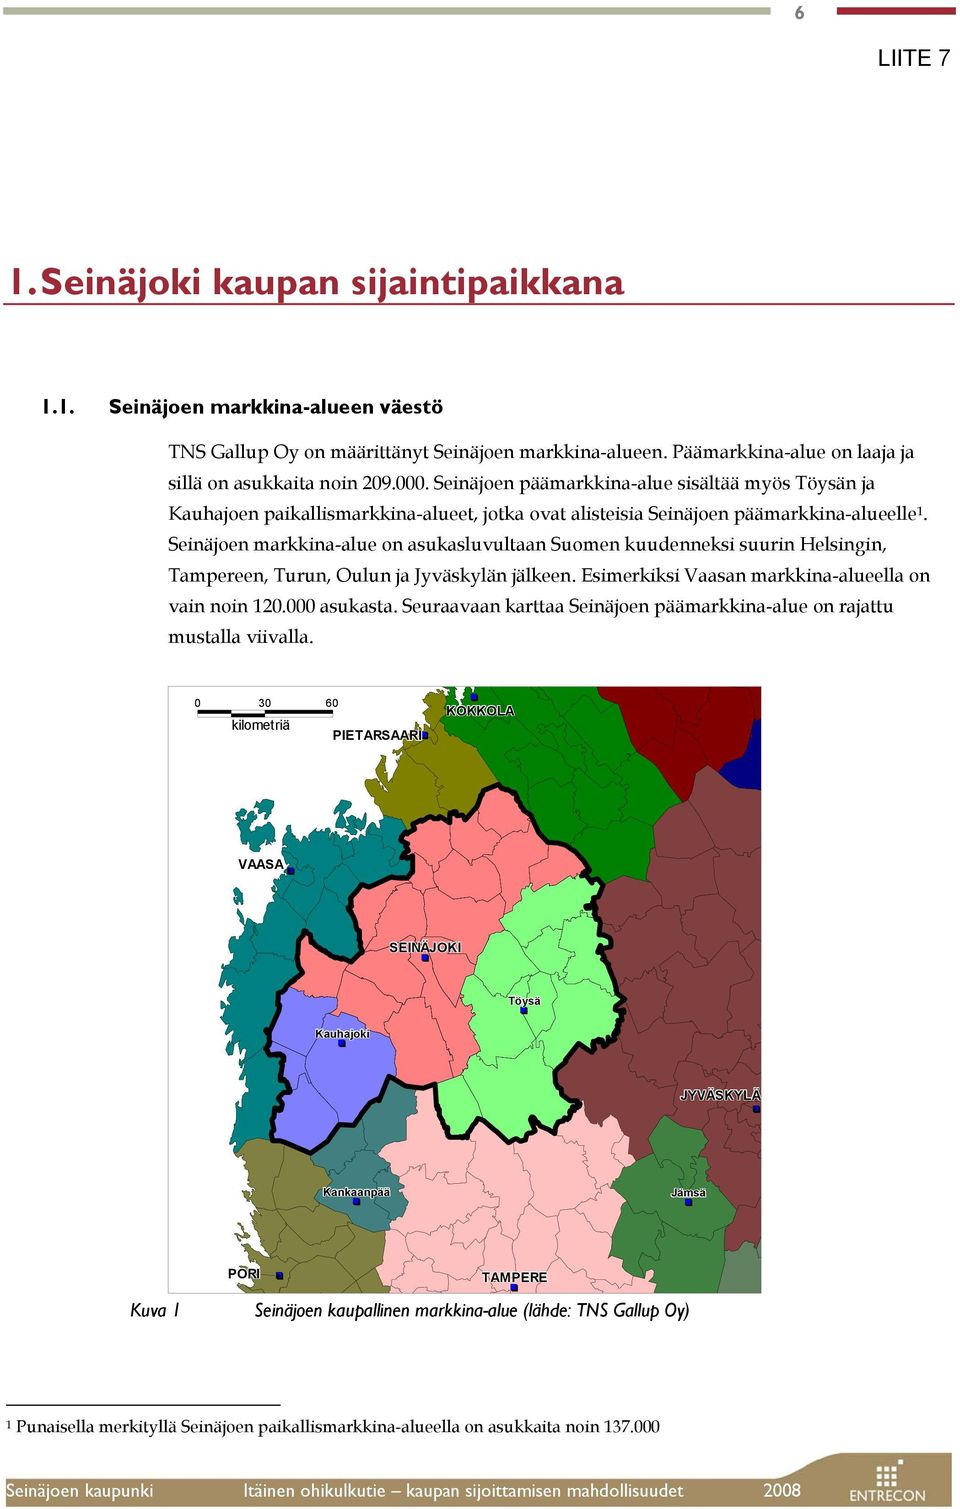 Seinäjoen markkina-alue on asukasluvultaan Suomen kuudenneksi suurin Helsingin, Tampereen, Turun, Oulun ja Jyväskylän jälkeen. Esimerkiksi Vaasan markkina-alueella on vain noin 120.000 asukasta.